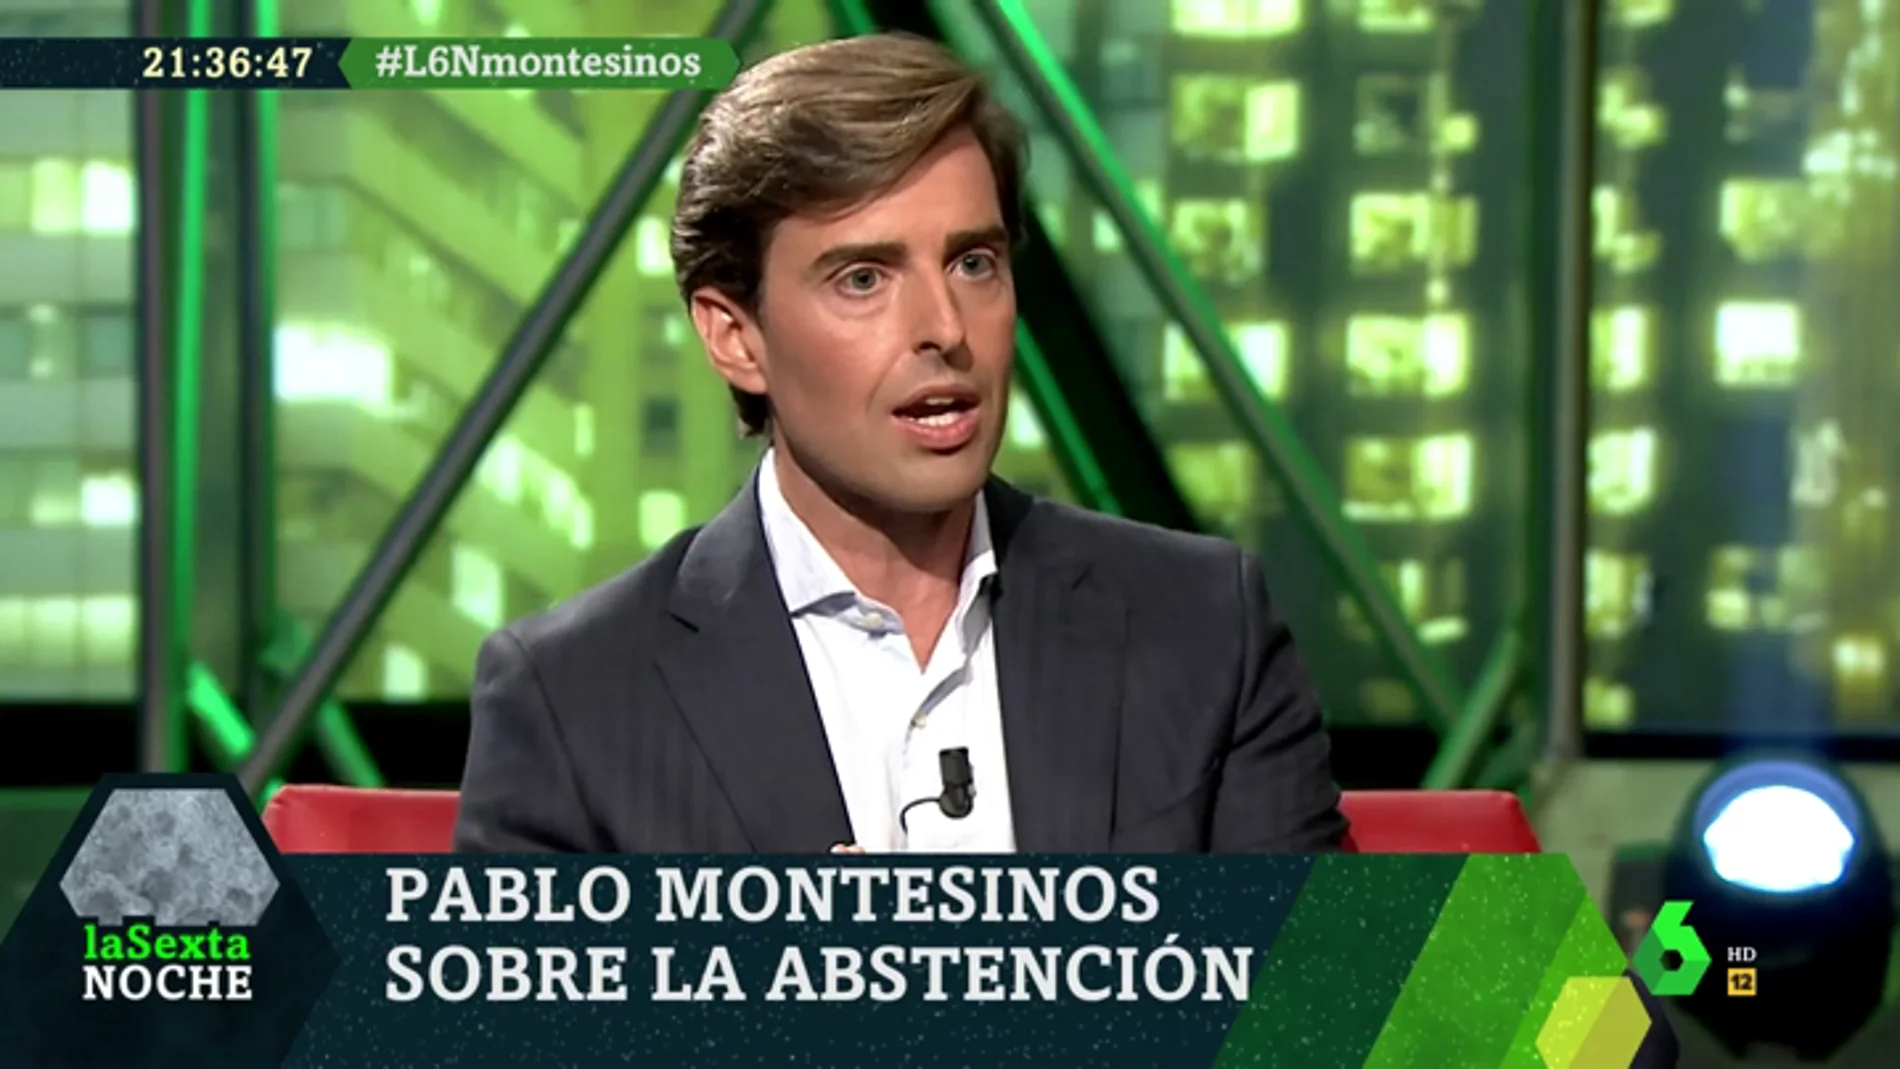  Pablo Montesinos: "El PP no va a facilitar la investidura ni de Sánchez ni de ningún dirigente del PSOE"